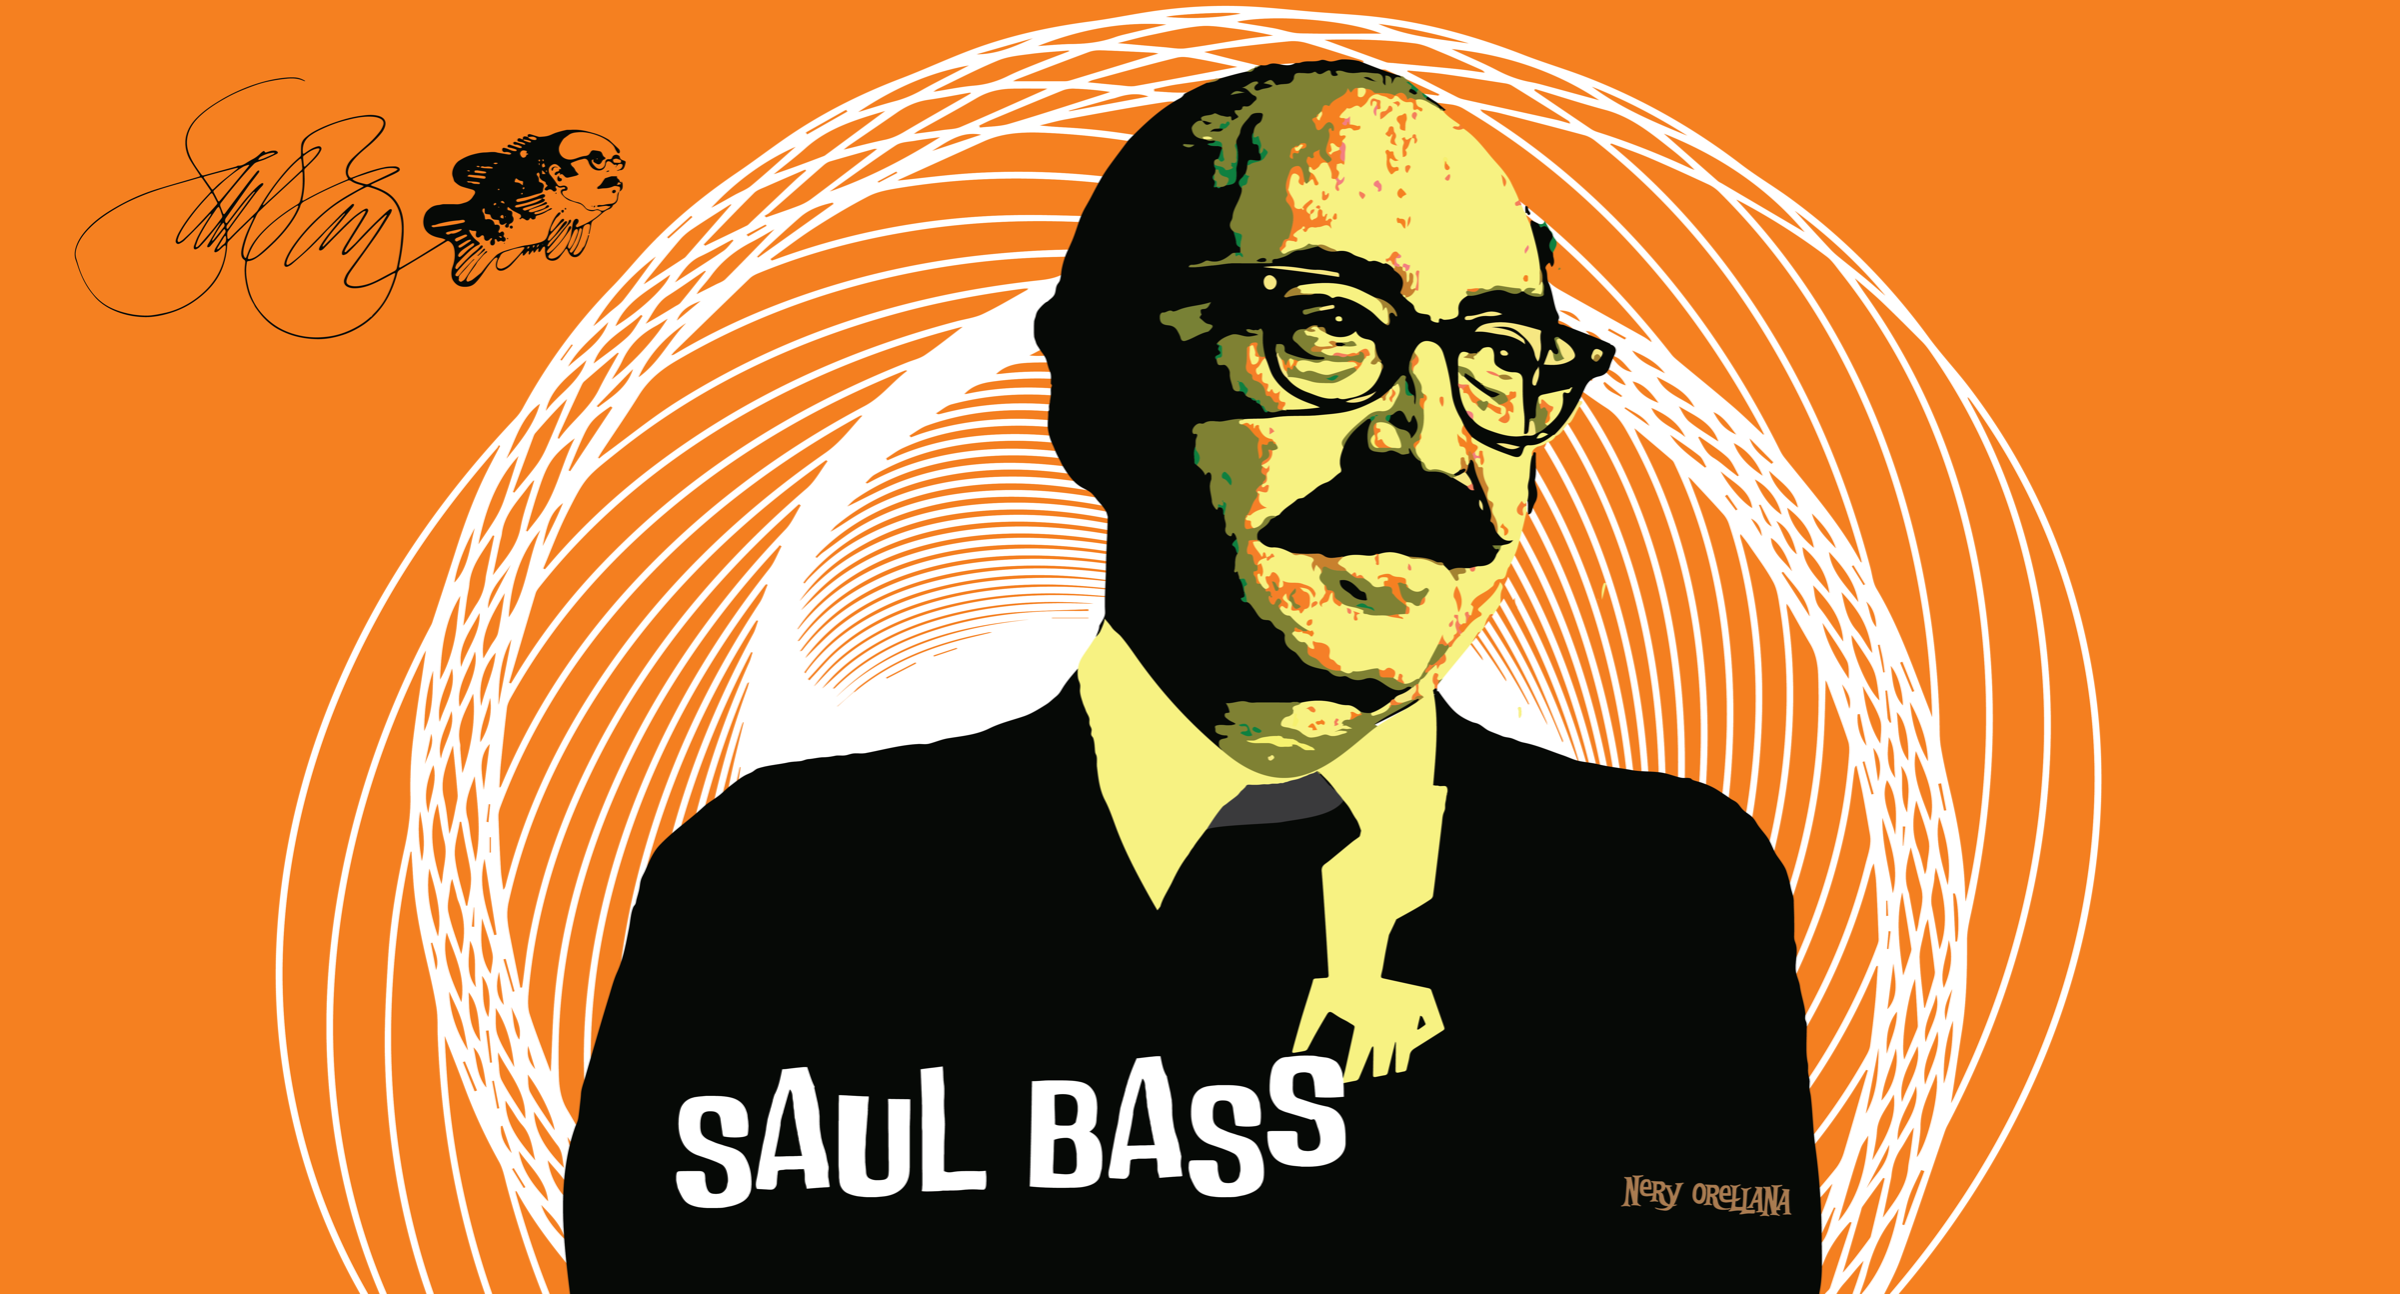 Saul Bass illustration by Nery Orellana